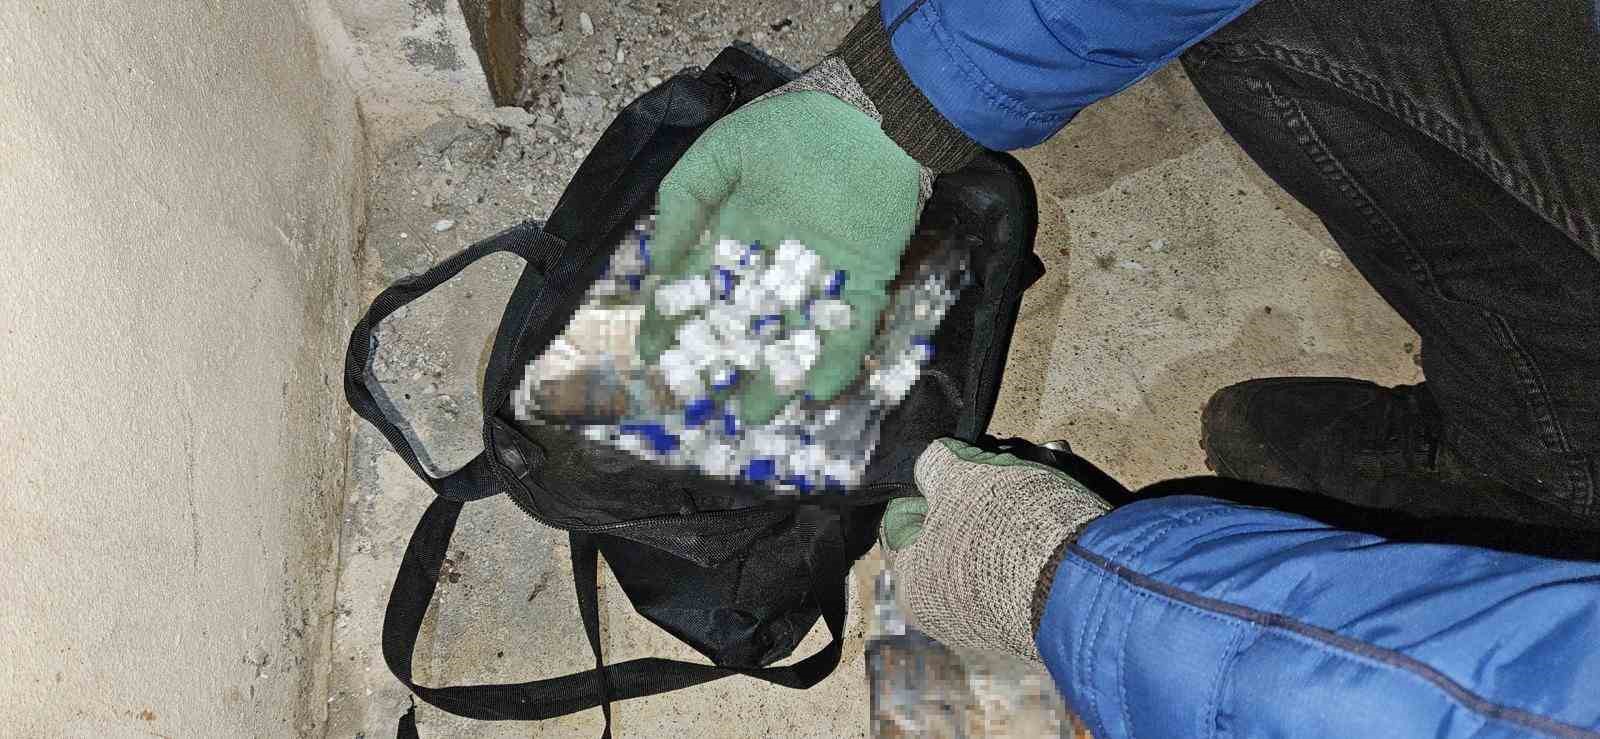 iğdır’da yabancıların çantasından 521 botoks ilacı ve 450 uyuşturucu hap çıktı